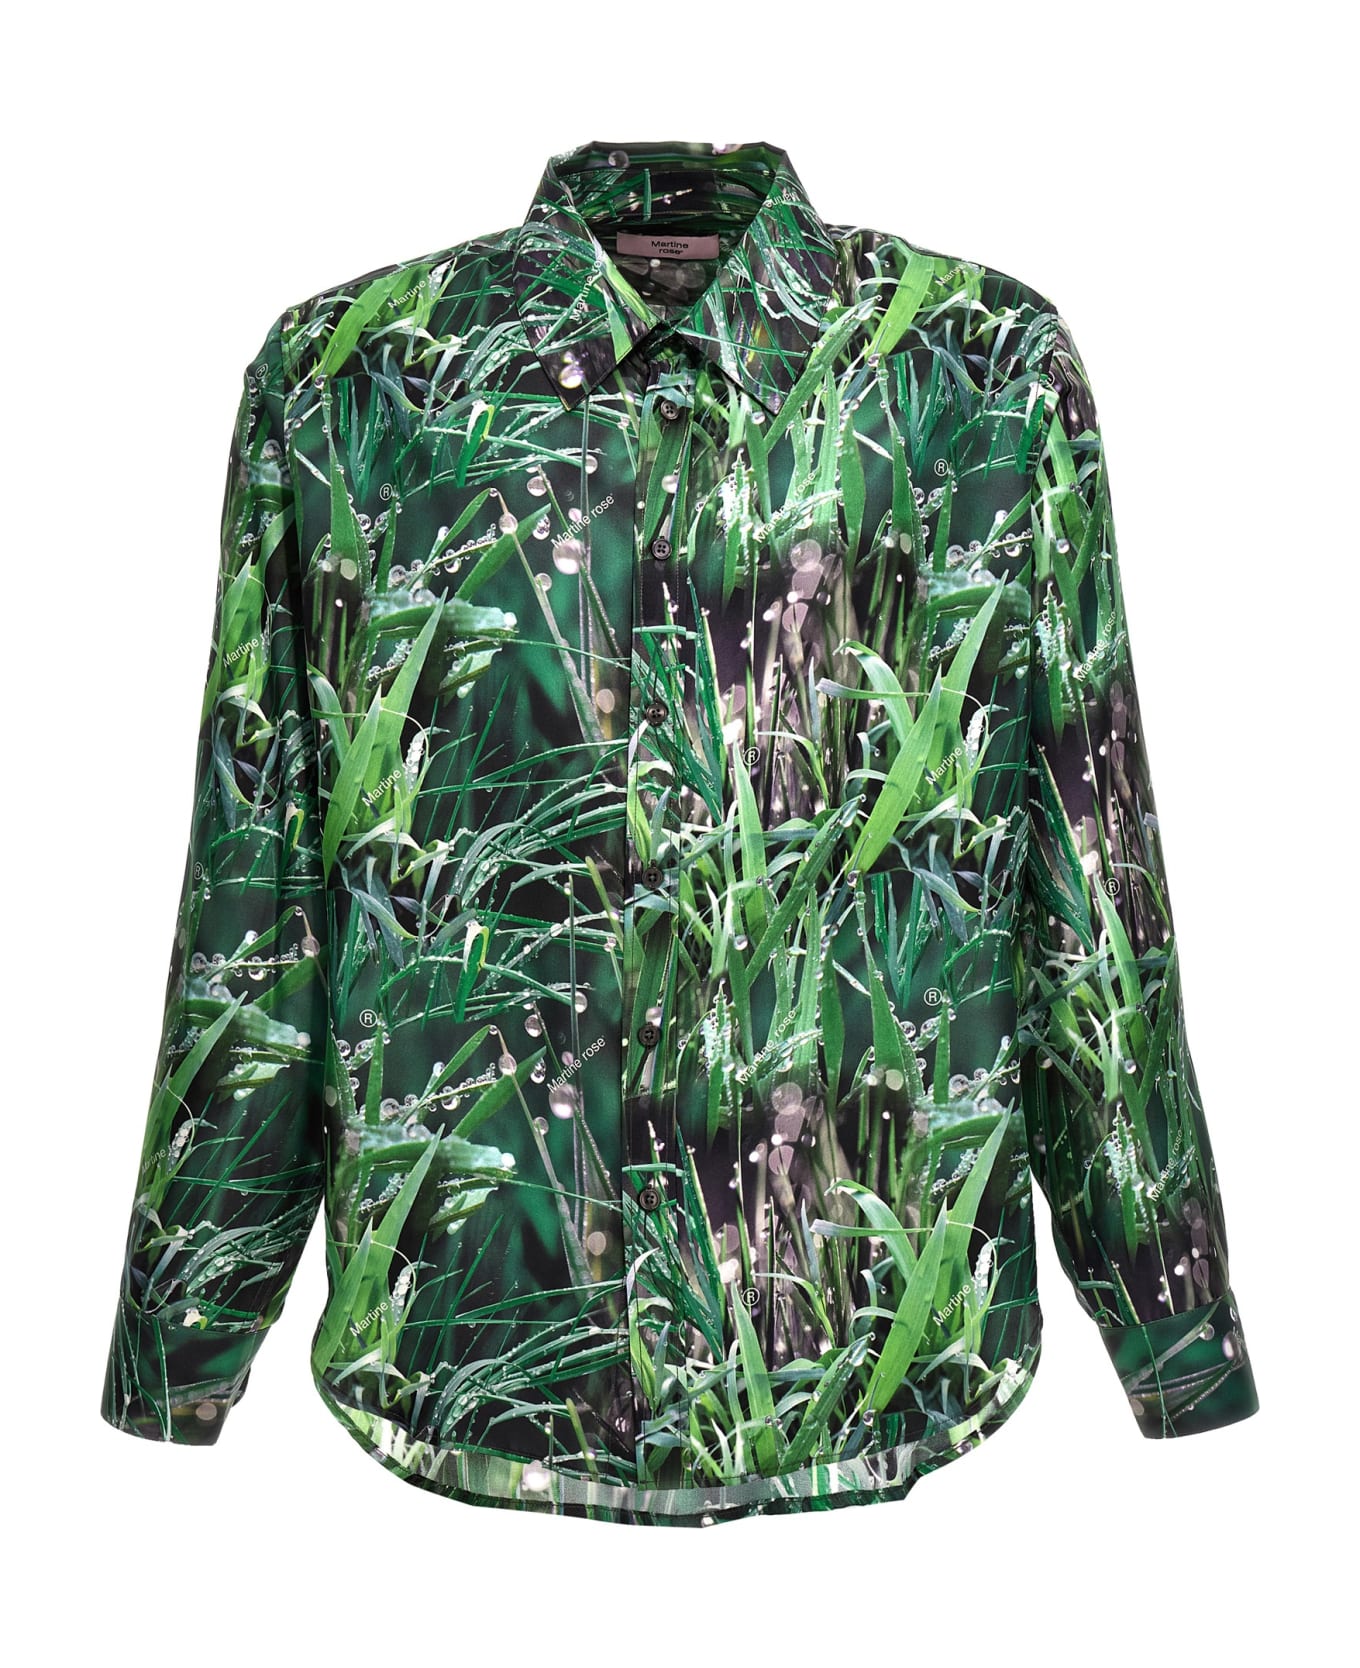 Martine Rose 'grass' Shirt - Green